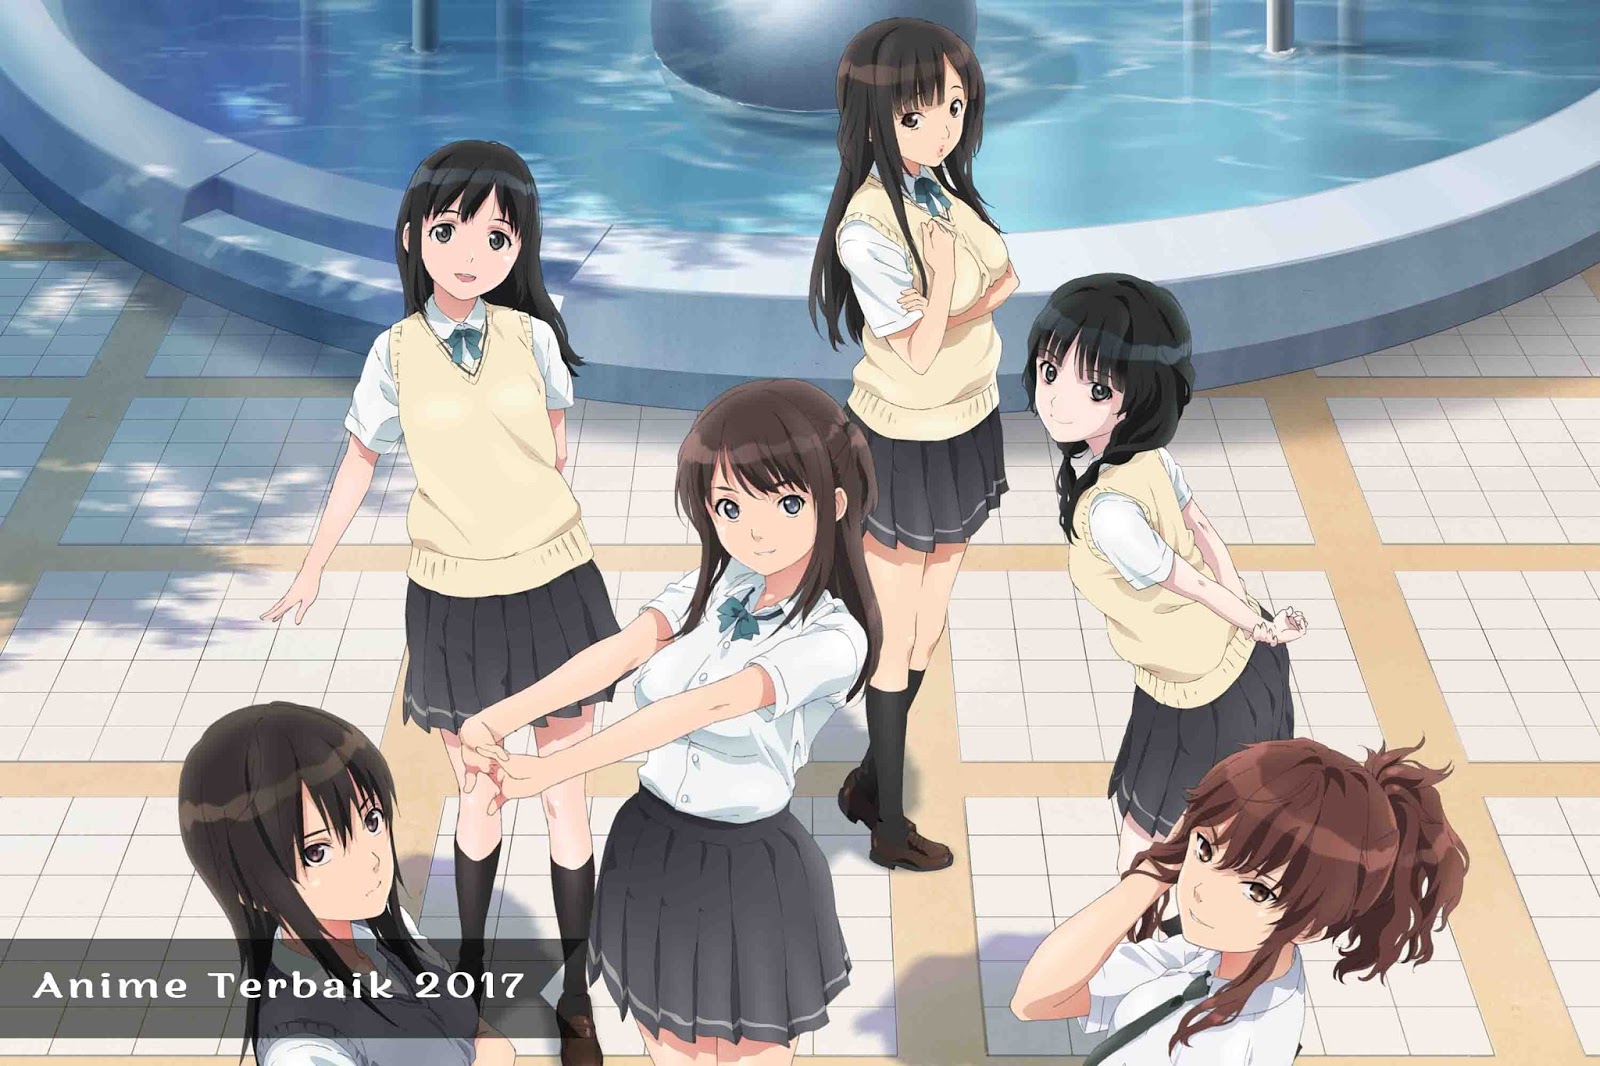 Anime Terbaik Tahun 2017 Yang Akan Segera Rilis - Sakerapedia